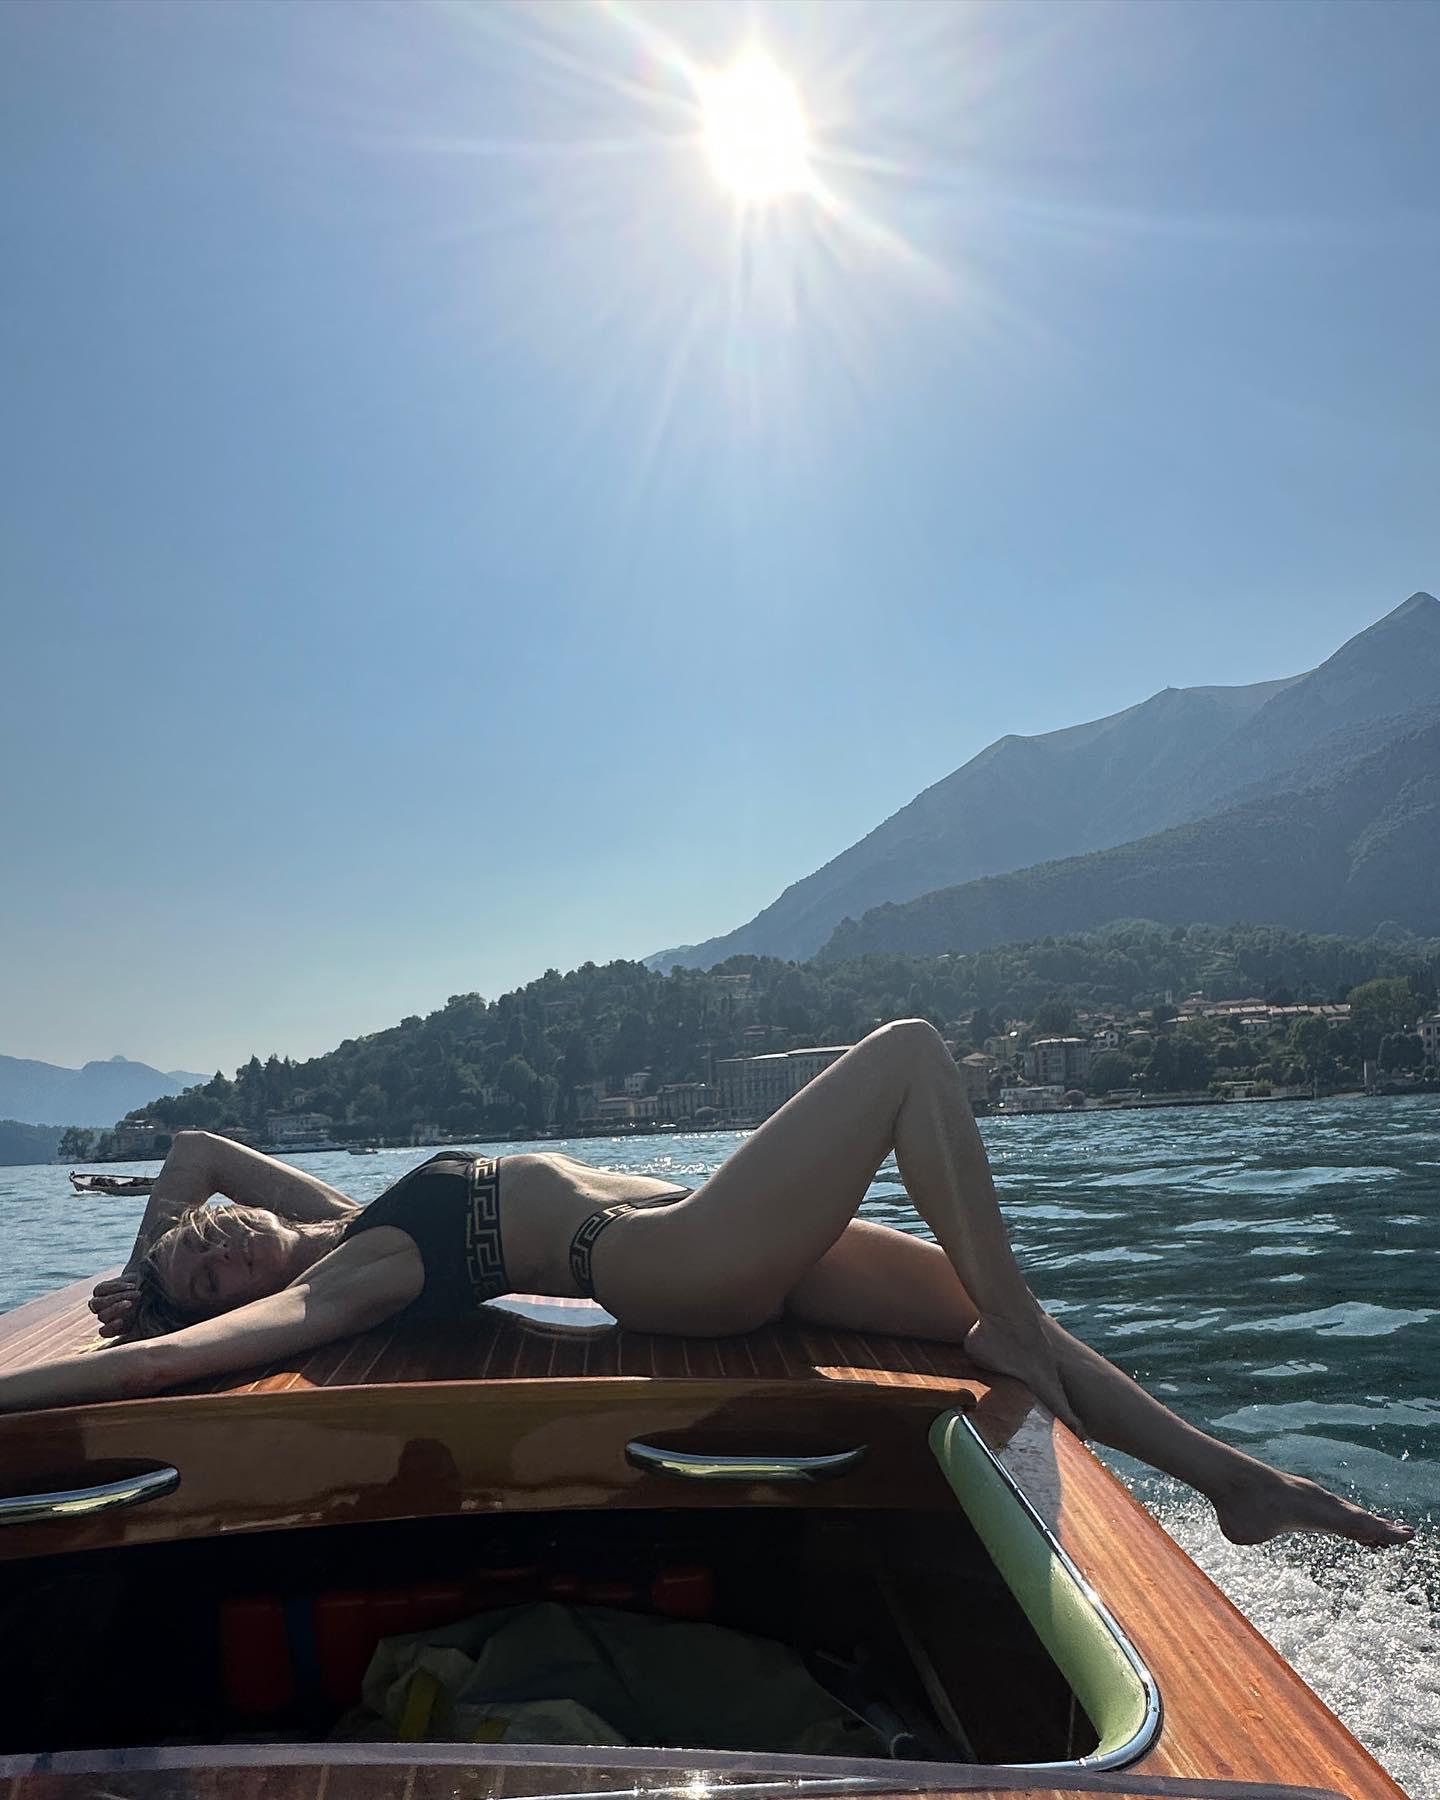 Heidi Klum Drives The Boat In Italy In Her Black Bikini